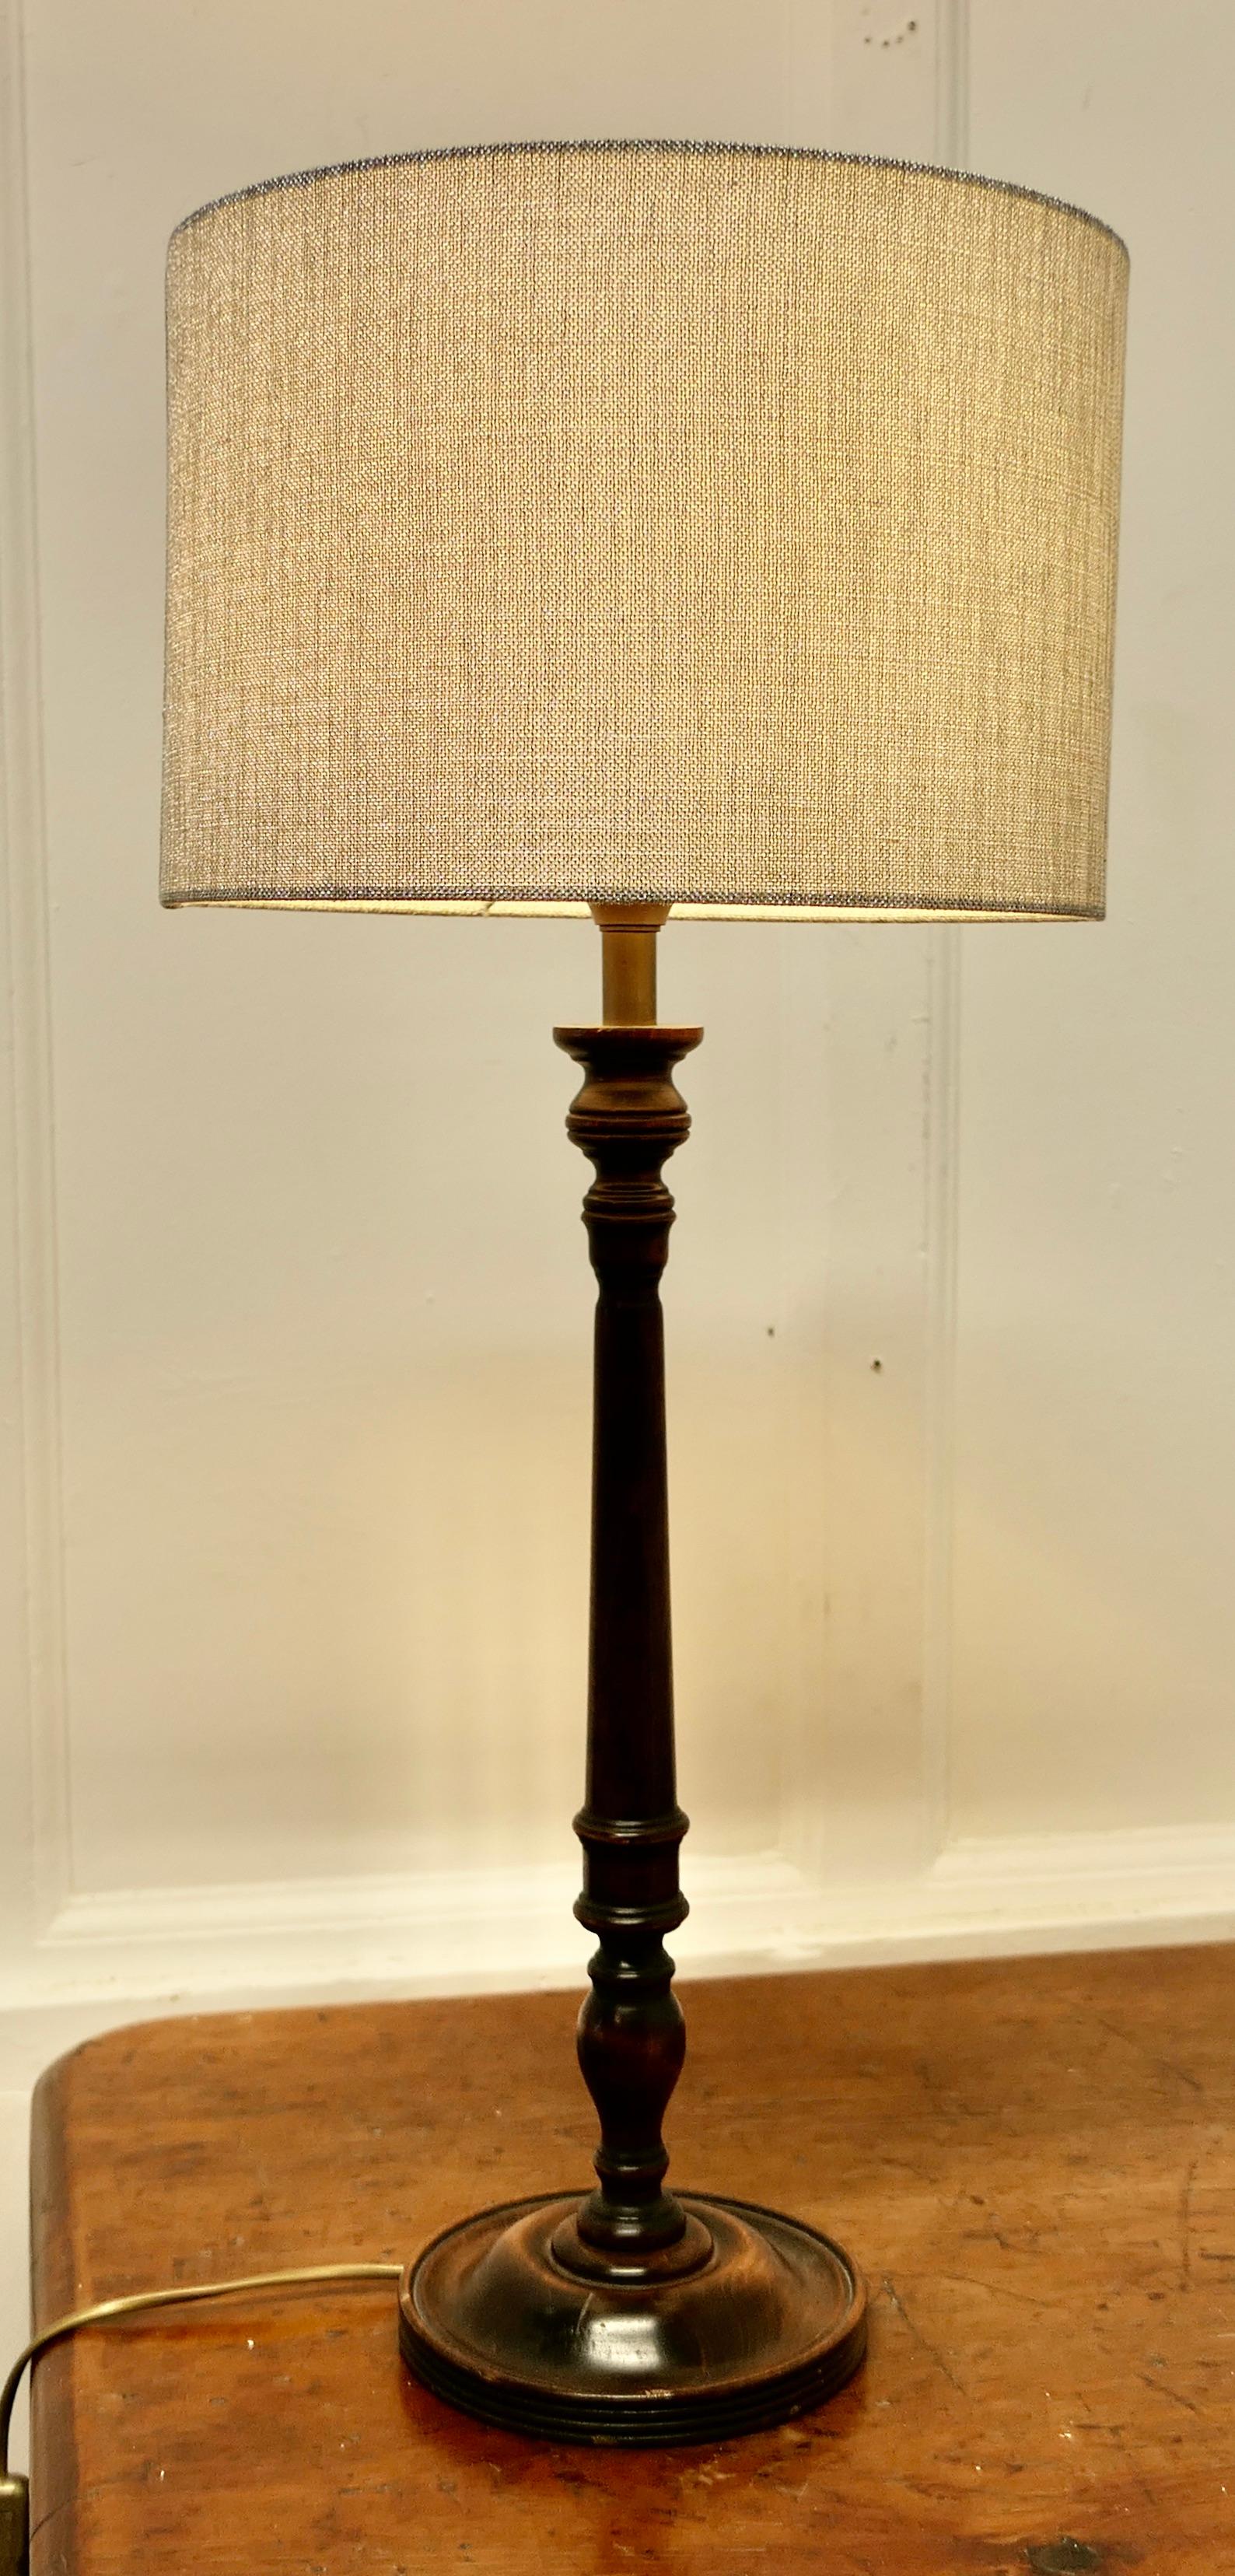 Grande lampe à poser en bois foncé tourné  

Une lampe de table attrayante en hêtre dans une finition foncée, haute et robuste, livrée avec un abat-jour recouvert de lin gris/argent.
La lampe mesure 21